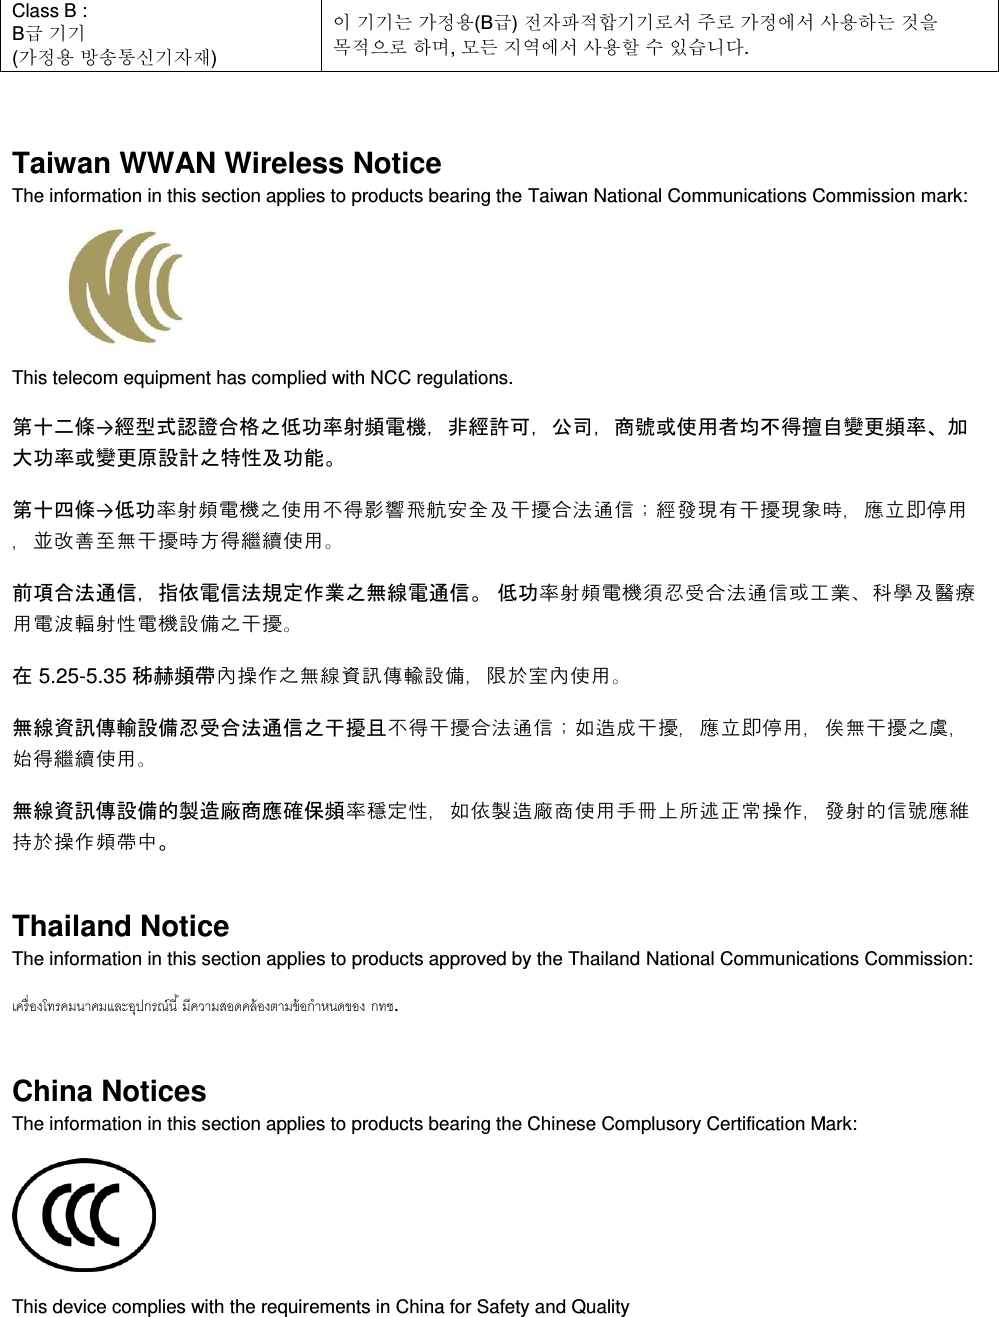  Class B :  B급 기기 (가정용 방송통신기자재) 이 기기는 가정용(B급) 전자파적합기기로서 주로 가정에서 사용하는 것을 목적으로 하며, 모든 지역에서 사용할 수 있습니다.  Taiwan WWAN Wireless Notice  The information in this section applies to products bearing the Taiwan National Communications Commission mark:    This telecom equipment has complied with NCC regulations.  第十二條→經型式認證合格之低功率射頻電機，非經許可，公司，商號或使用者均不得擅自變更頻率、加大功率或變更原設計之特性及功能。 第十四條→低功率射頻電機之使用不得影響飛航安全及干擾合法通信；經發現有干擾現象時，應立即停用，並改善至無干擾時方得繼續使用。 前項合法通信，指依電信法規定作業之無線電通信。 低功率射頻電機須忍受合法通信或工業、科學及醫療用電波輻射性電機設備之干擾。 在 5.25-5.35 秭赫頻帶內操作之無線資訊傳輸設備，限於室內使用。 無線資訊傳輸設備忍受合法通信之干擾且不得干擾合法通信；如造成干擾，應立即停用，俟無干擾之虞，始得繼續使用。 無線資訊傳設備的製造廠商應確保頻率穩定性，如依製造廠商使用手冊上所述正常操作，發射的信號應維持於操作頻帶中。 Thailand Notice The information in this section applies to products approved by the Thailand National Communications Commission:   . China Notices The information in this section applies to products bearing the Chinese Complusory Certification Mark:  This device complies with the requirements in China for Safety and Quality 